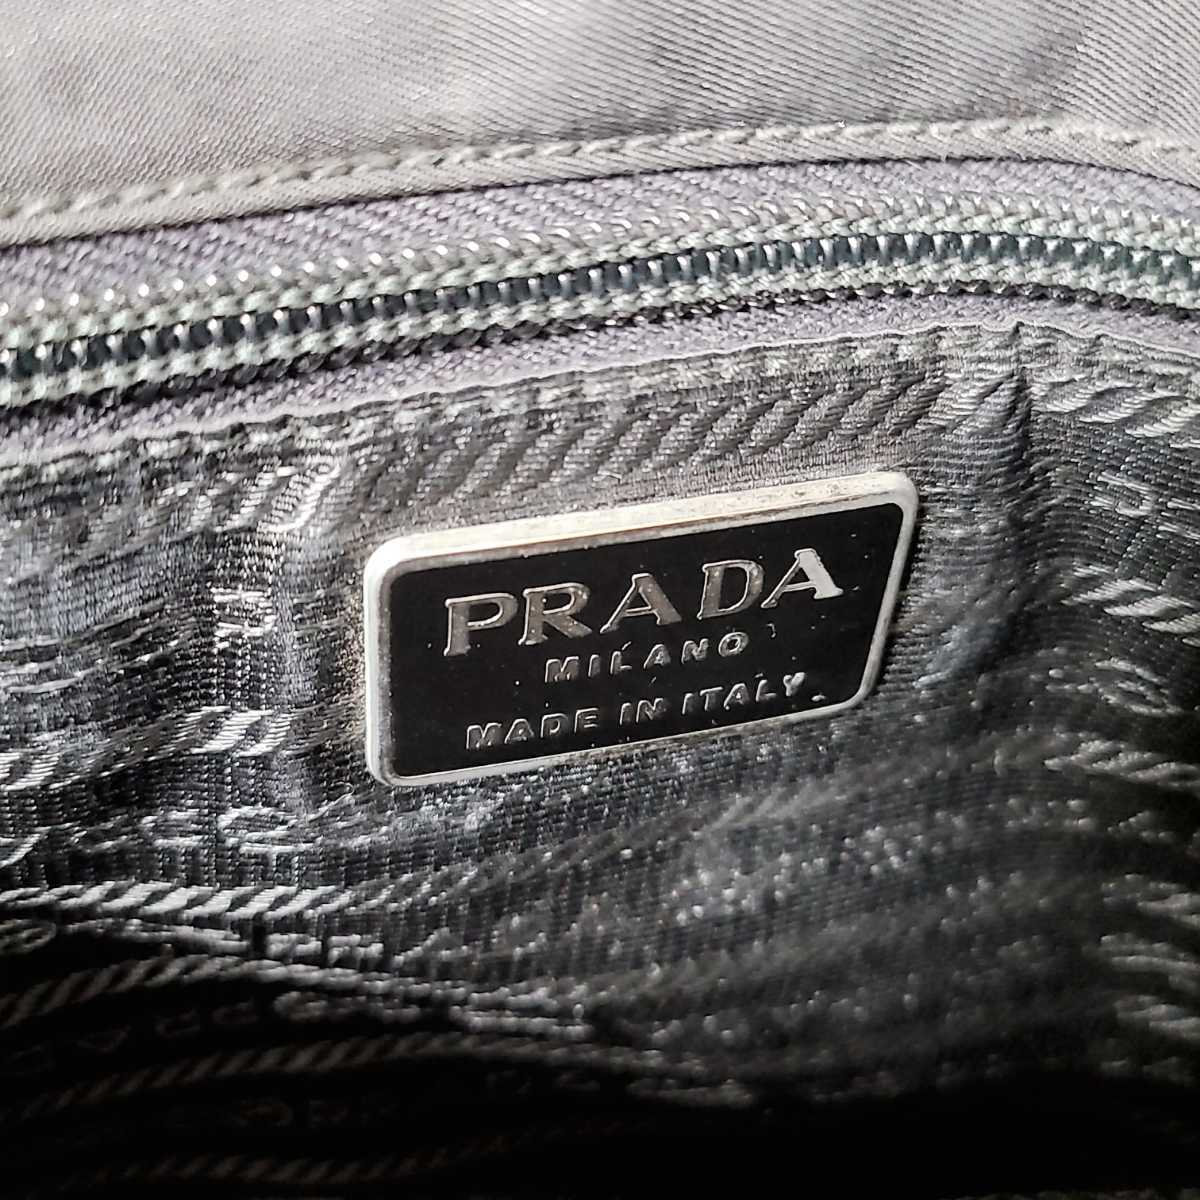 PRADA プラダ ナイロン レザー 本革 トートバッグ 高級ブランド 